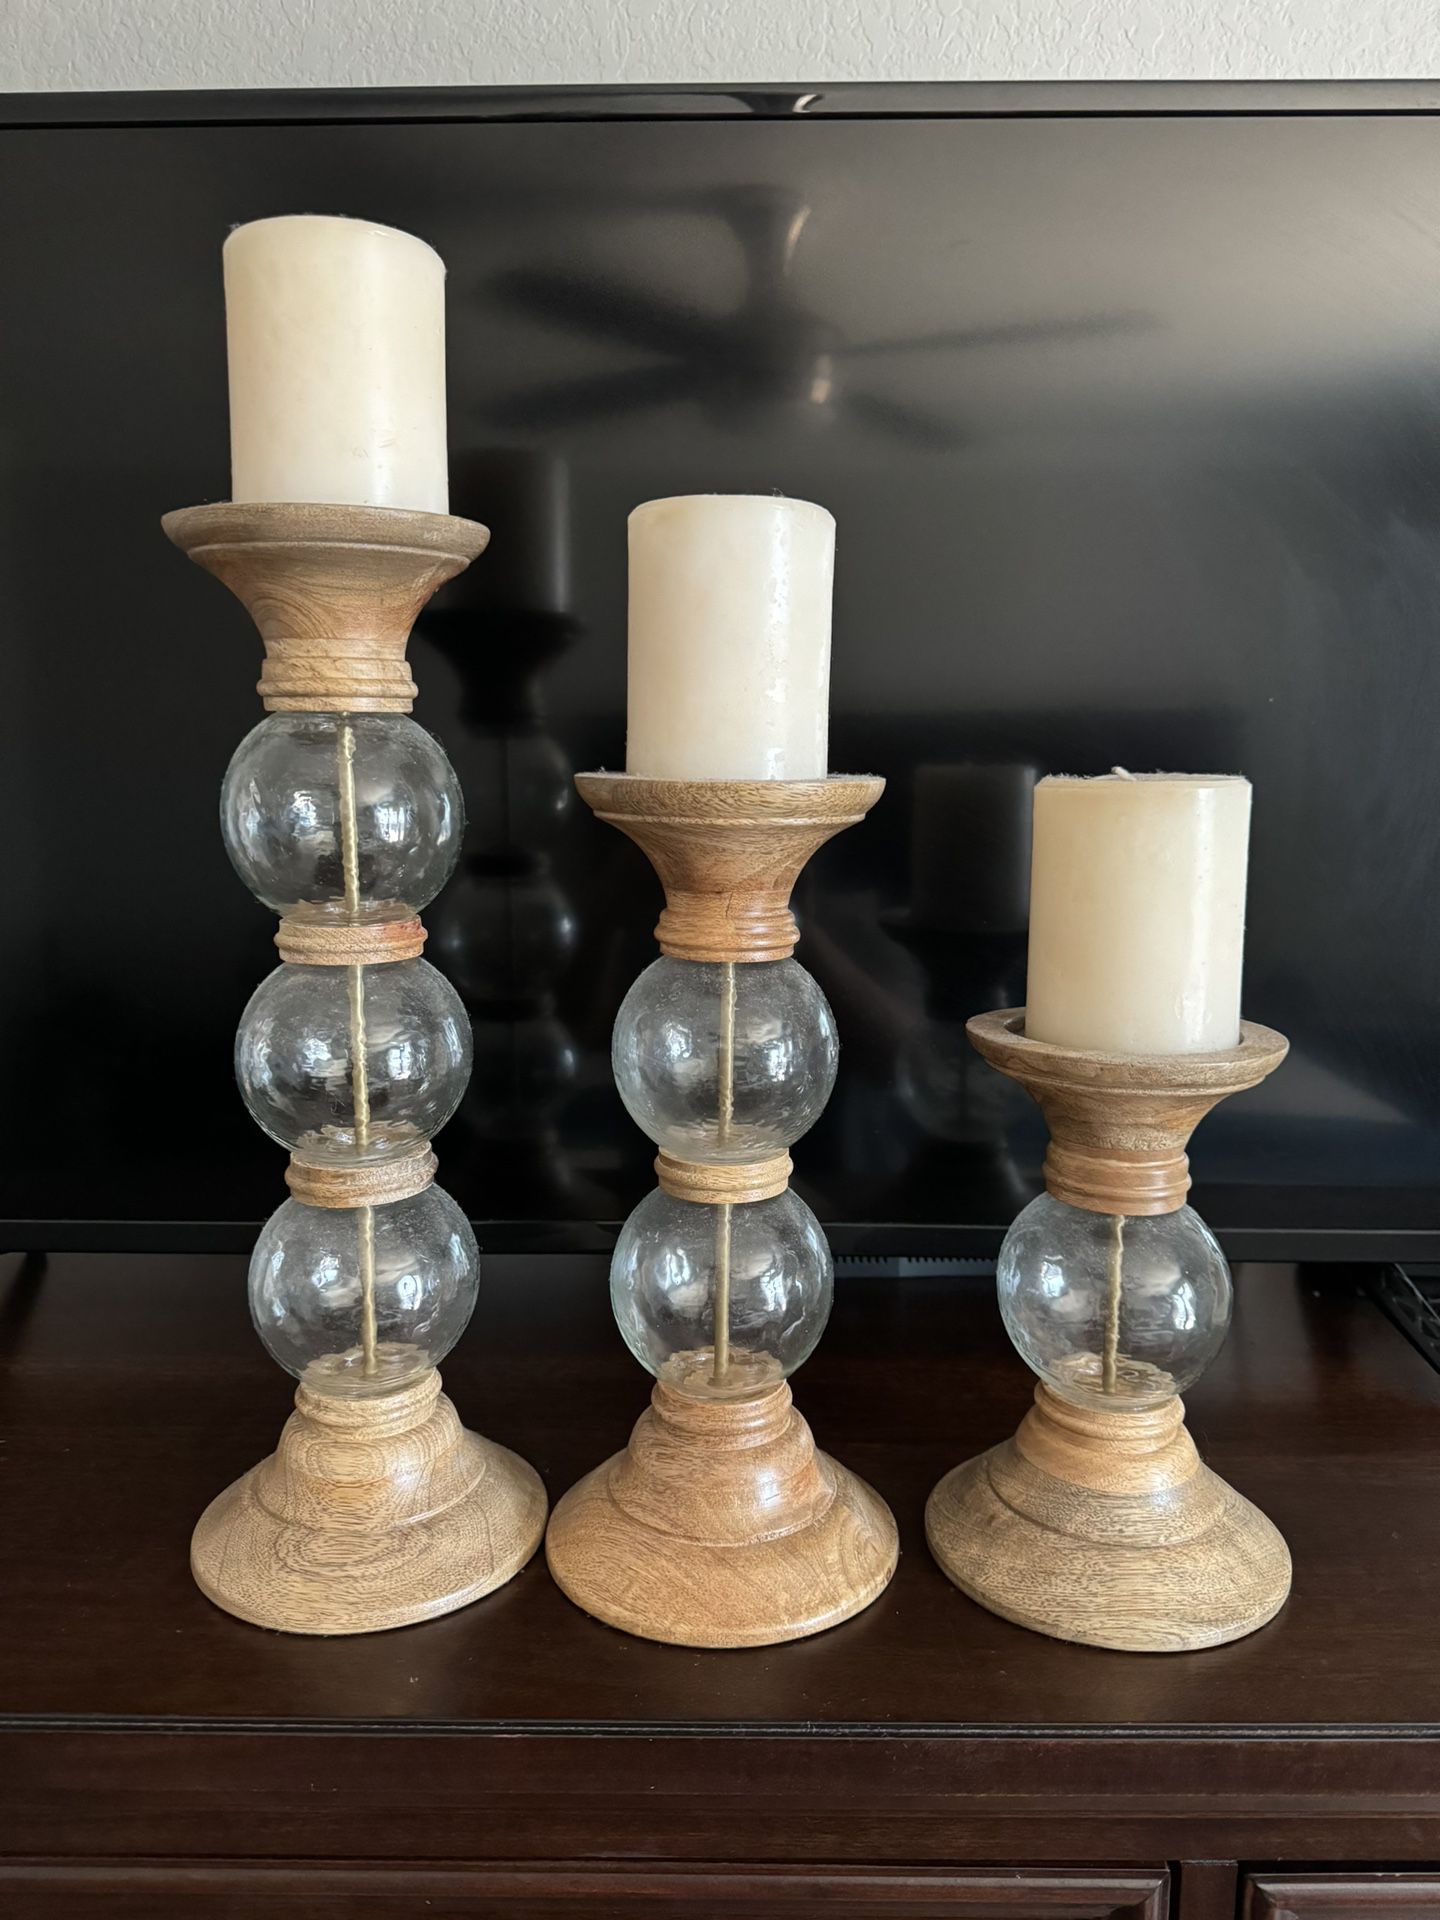 Candle pillars